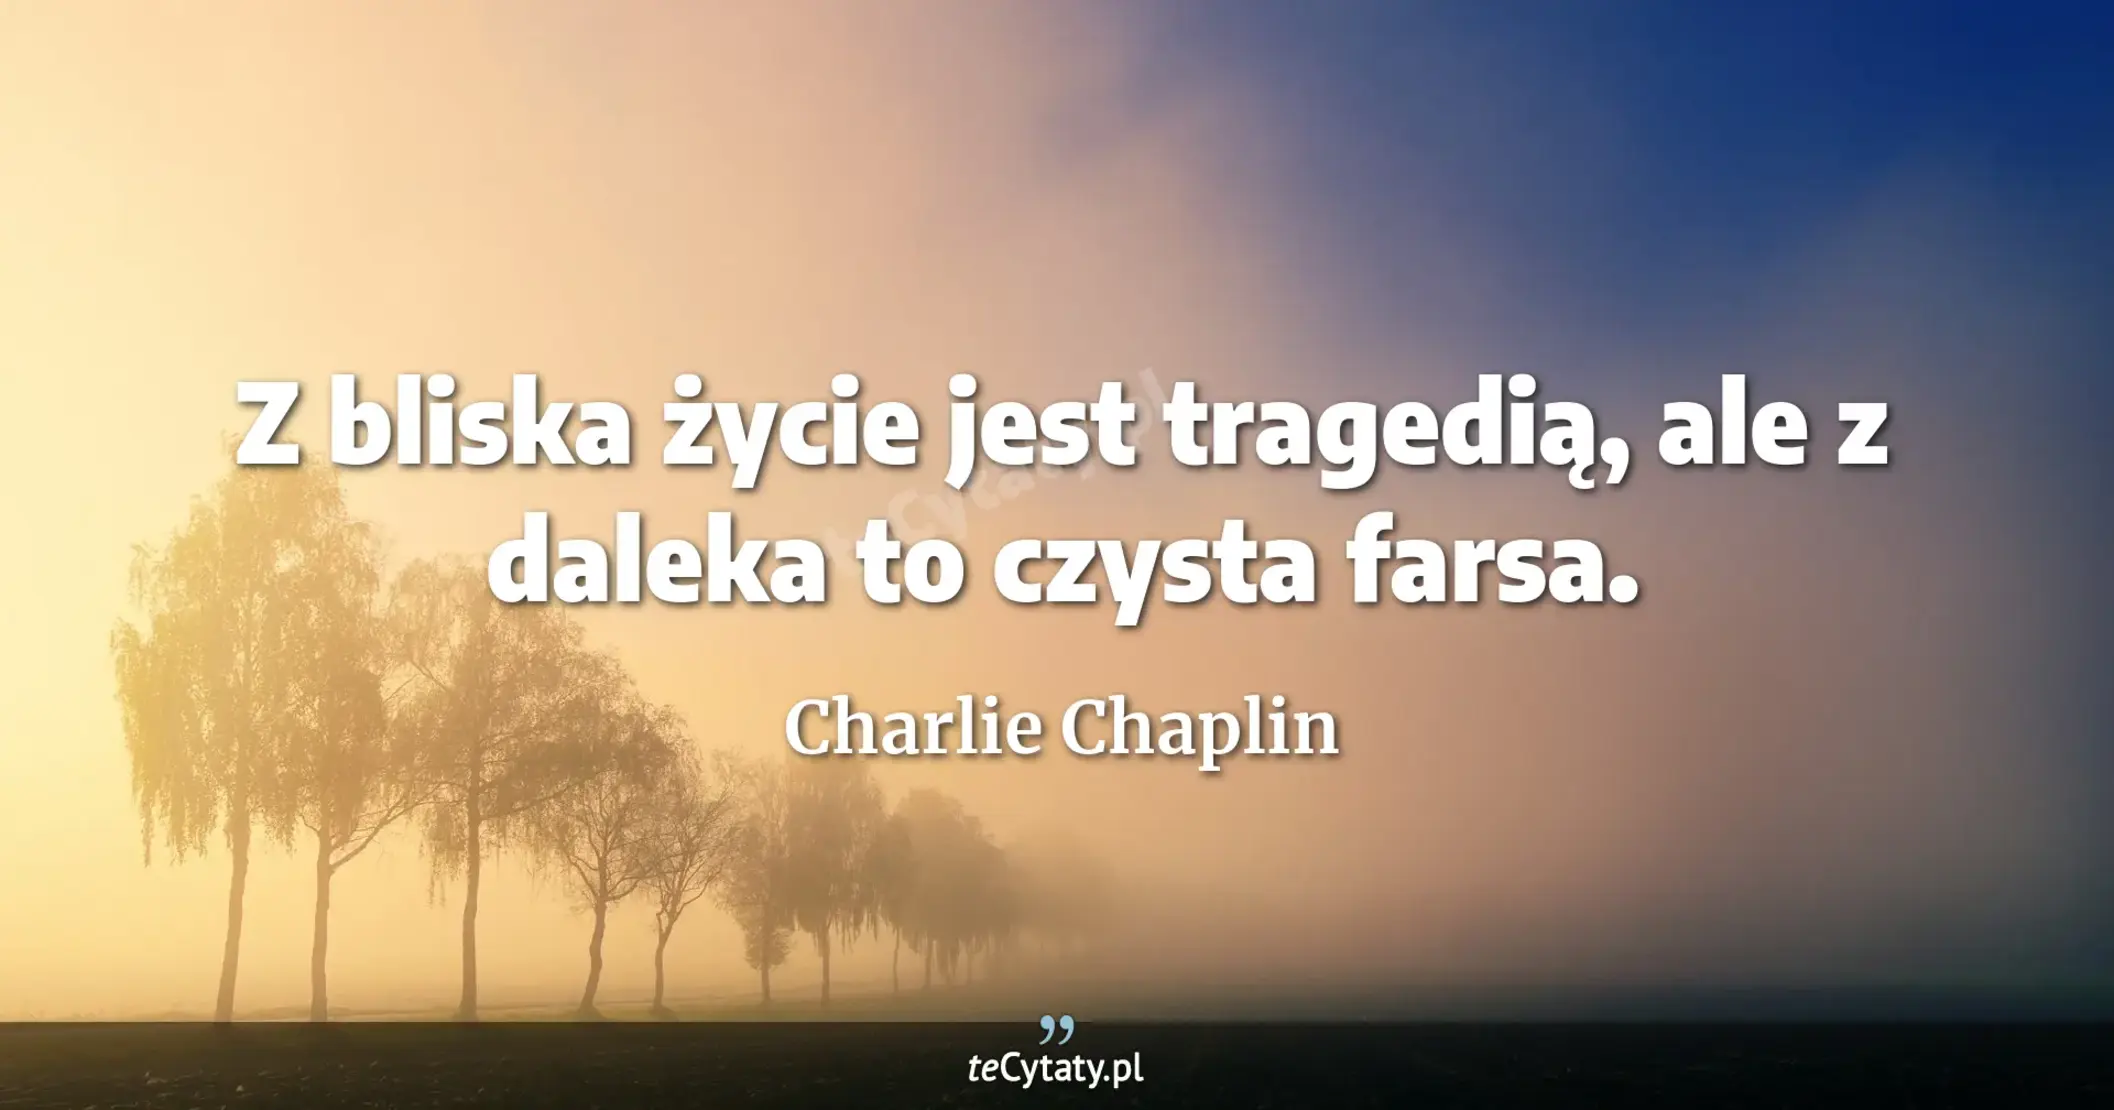 Z bliska życie jest tragedią, ale z daleka to czysta farsa. - Charlie Chaplin